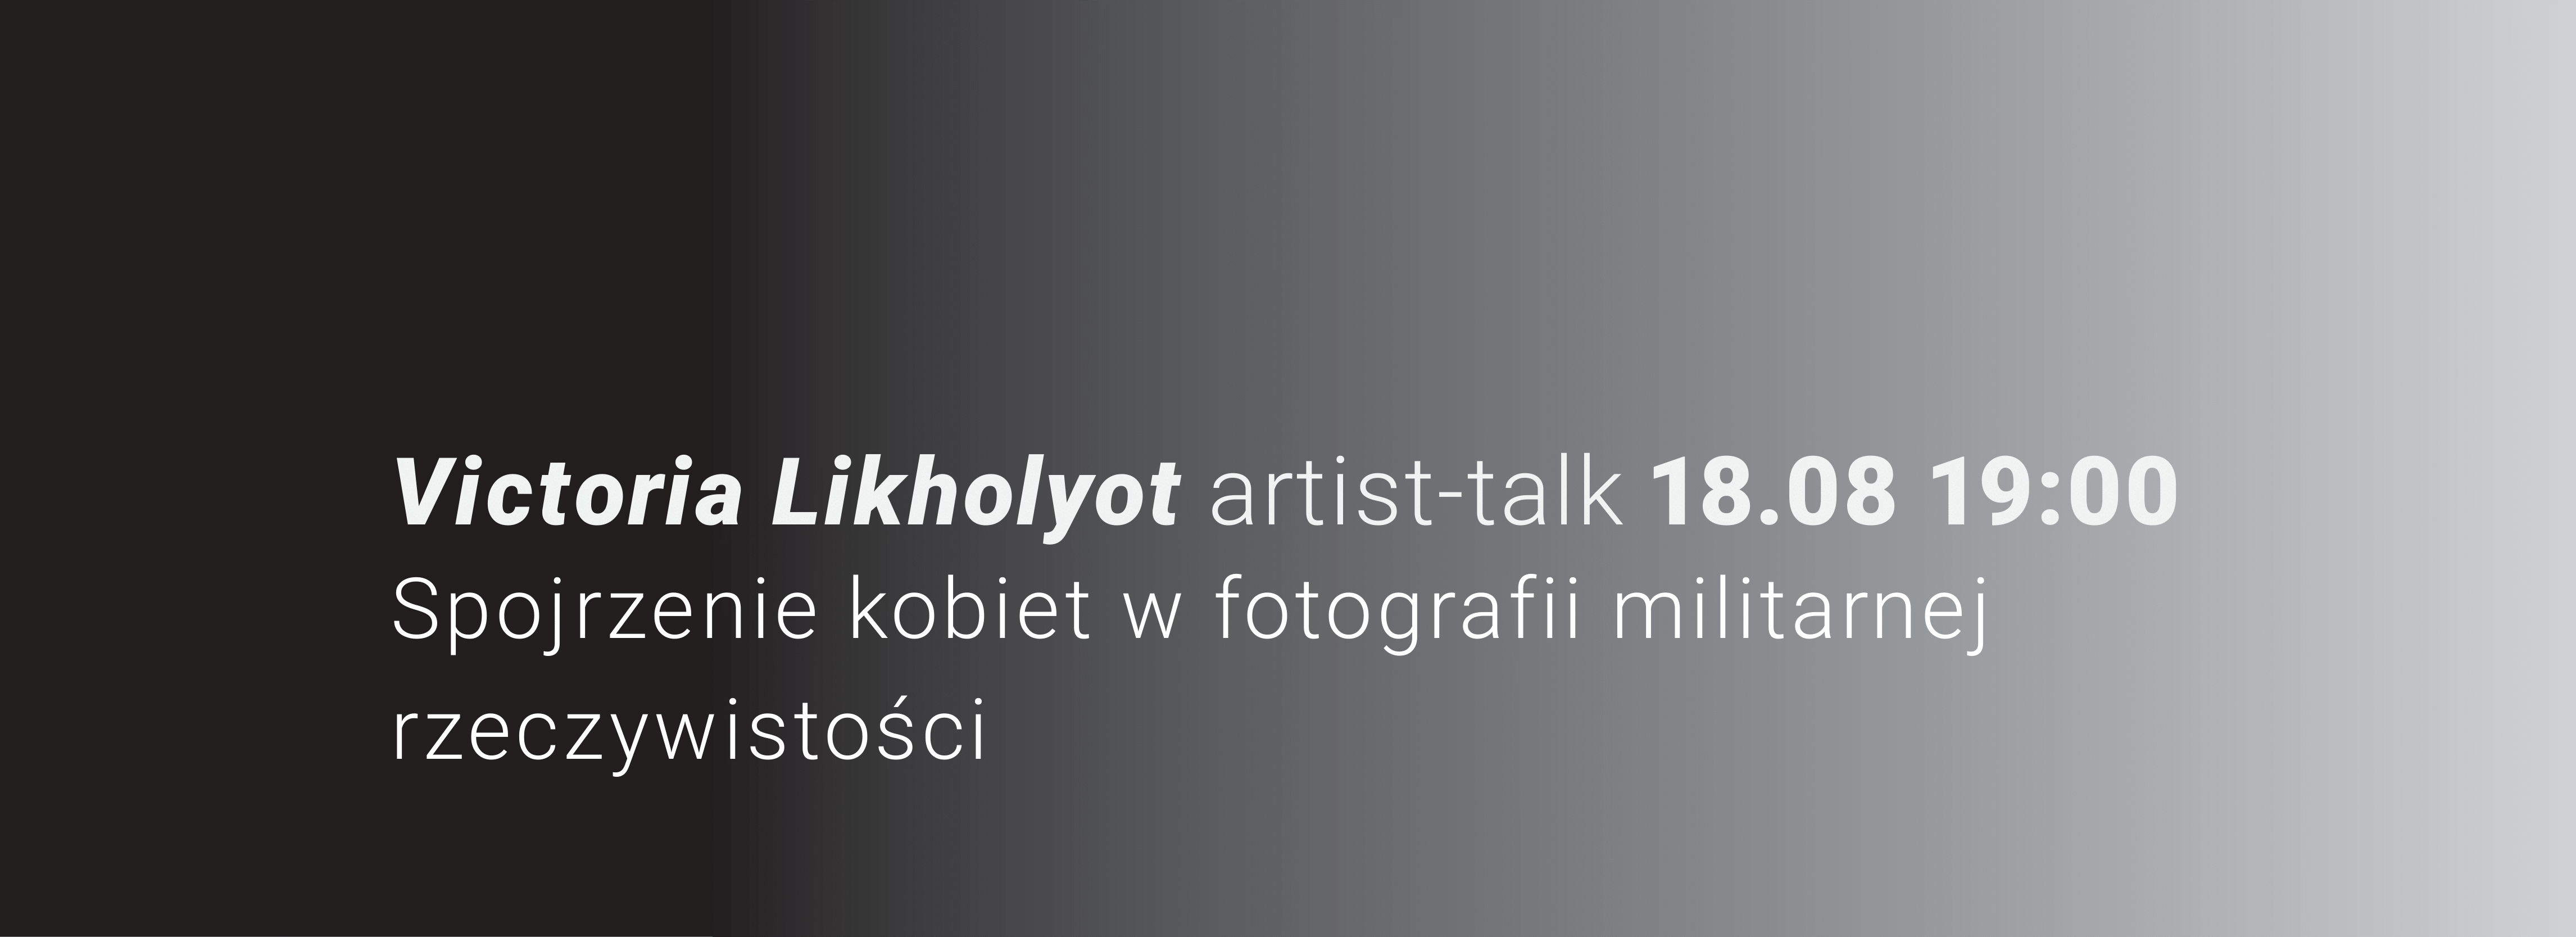 Artist talk z Victorią Likholyot towarzyszący wystawie CHWILA. Bardzo długi czas